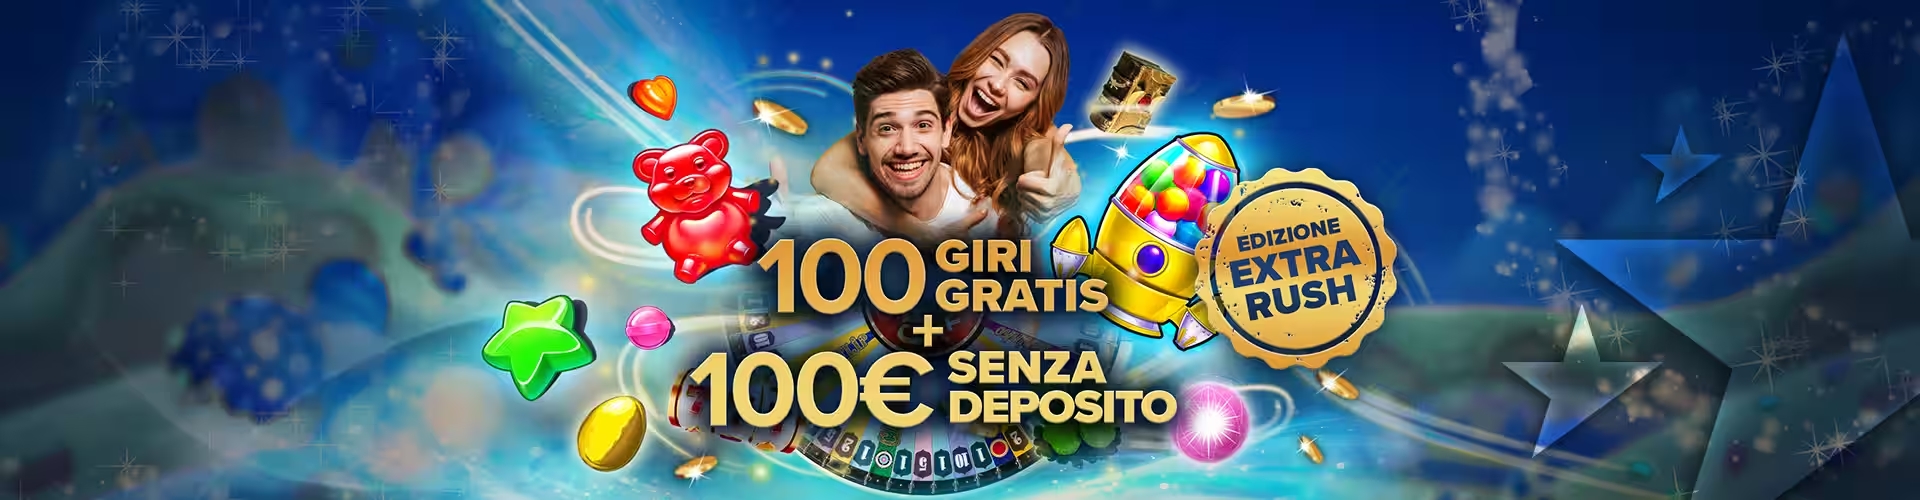 Nuovo Bonus StarVegas: 100€ + 100 Giri Gratis per iniziare a giocare!